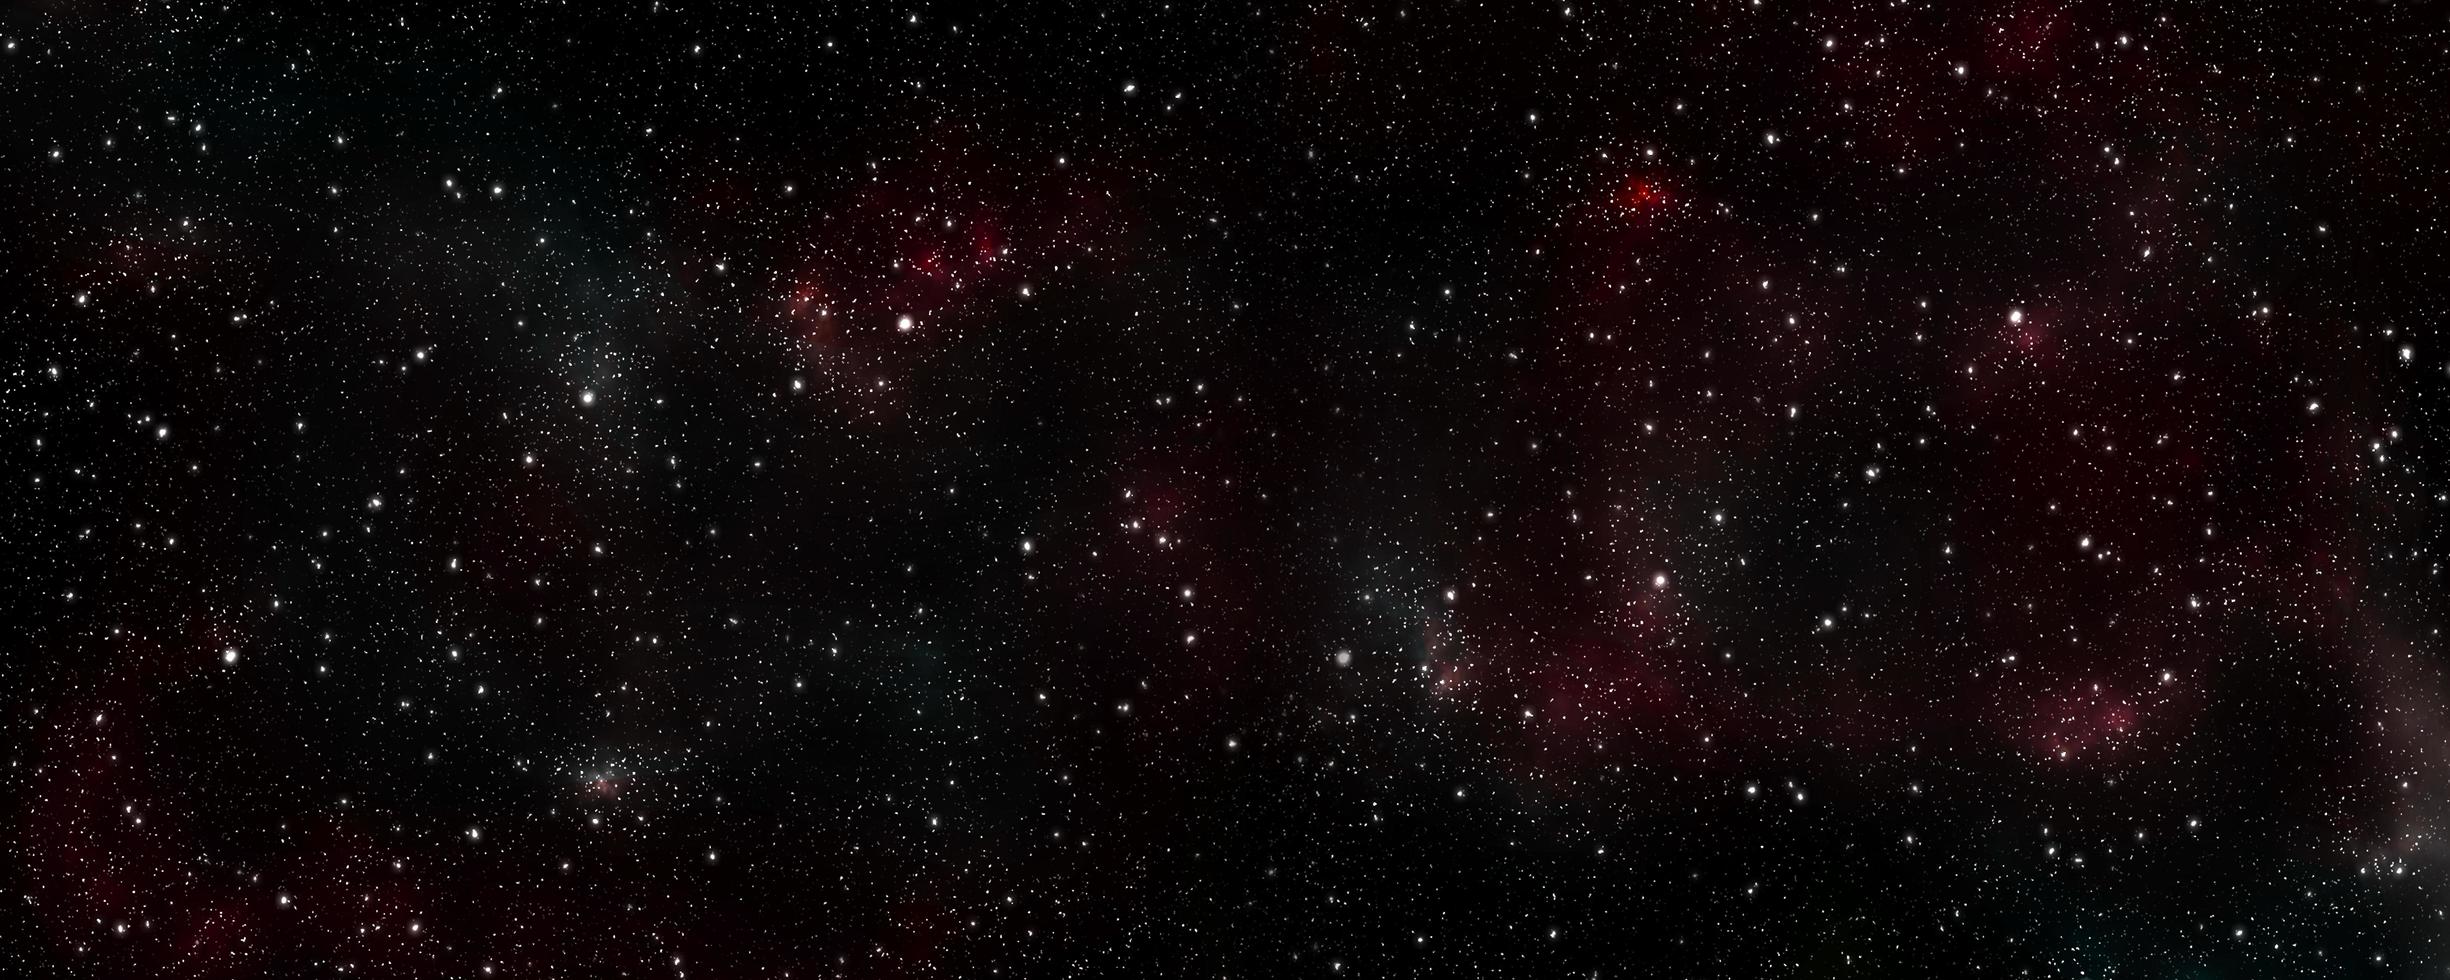 estrelas da galáxia no universo fora do cartão de papel de parede de design gráfico abstrato da terra. 3d foto